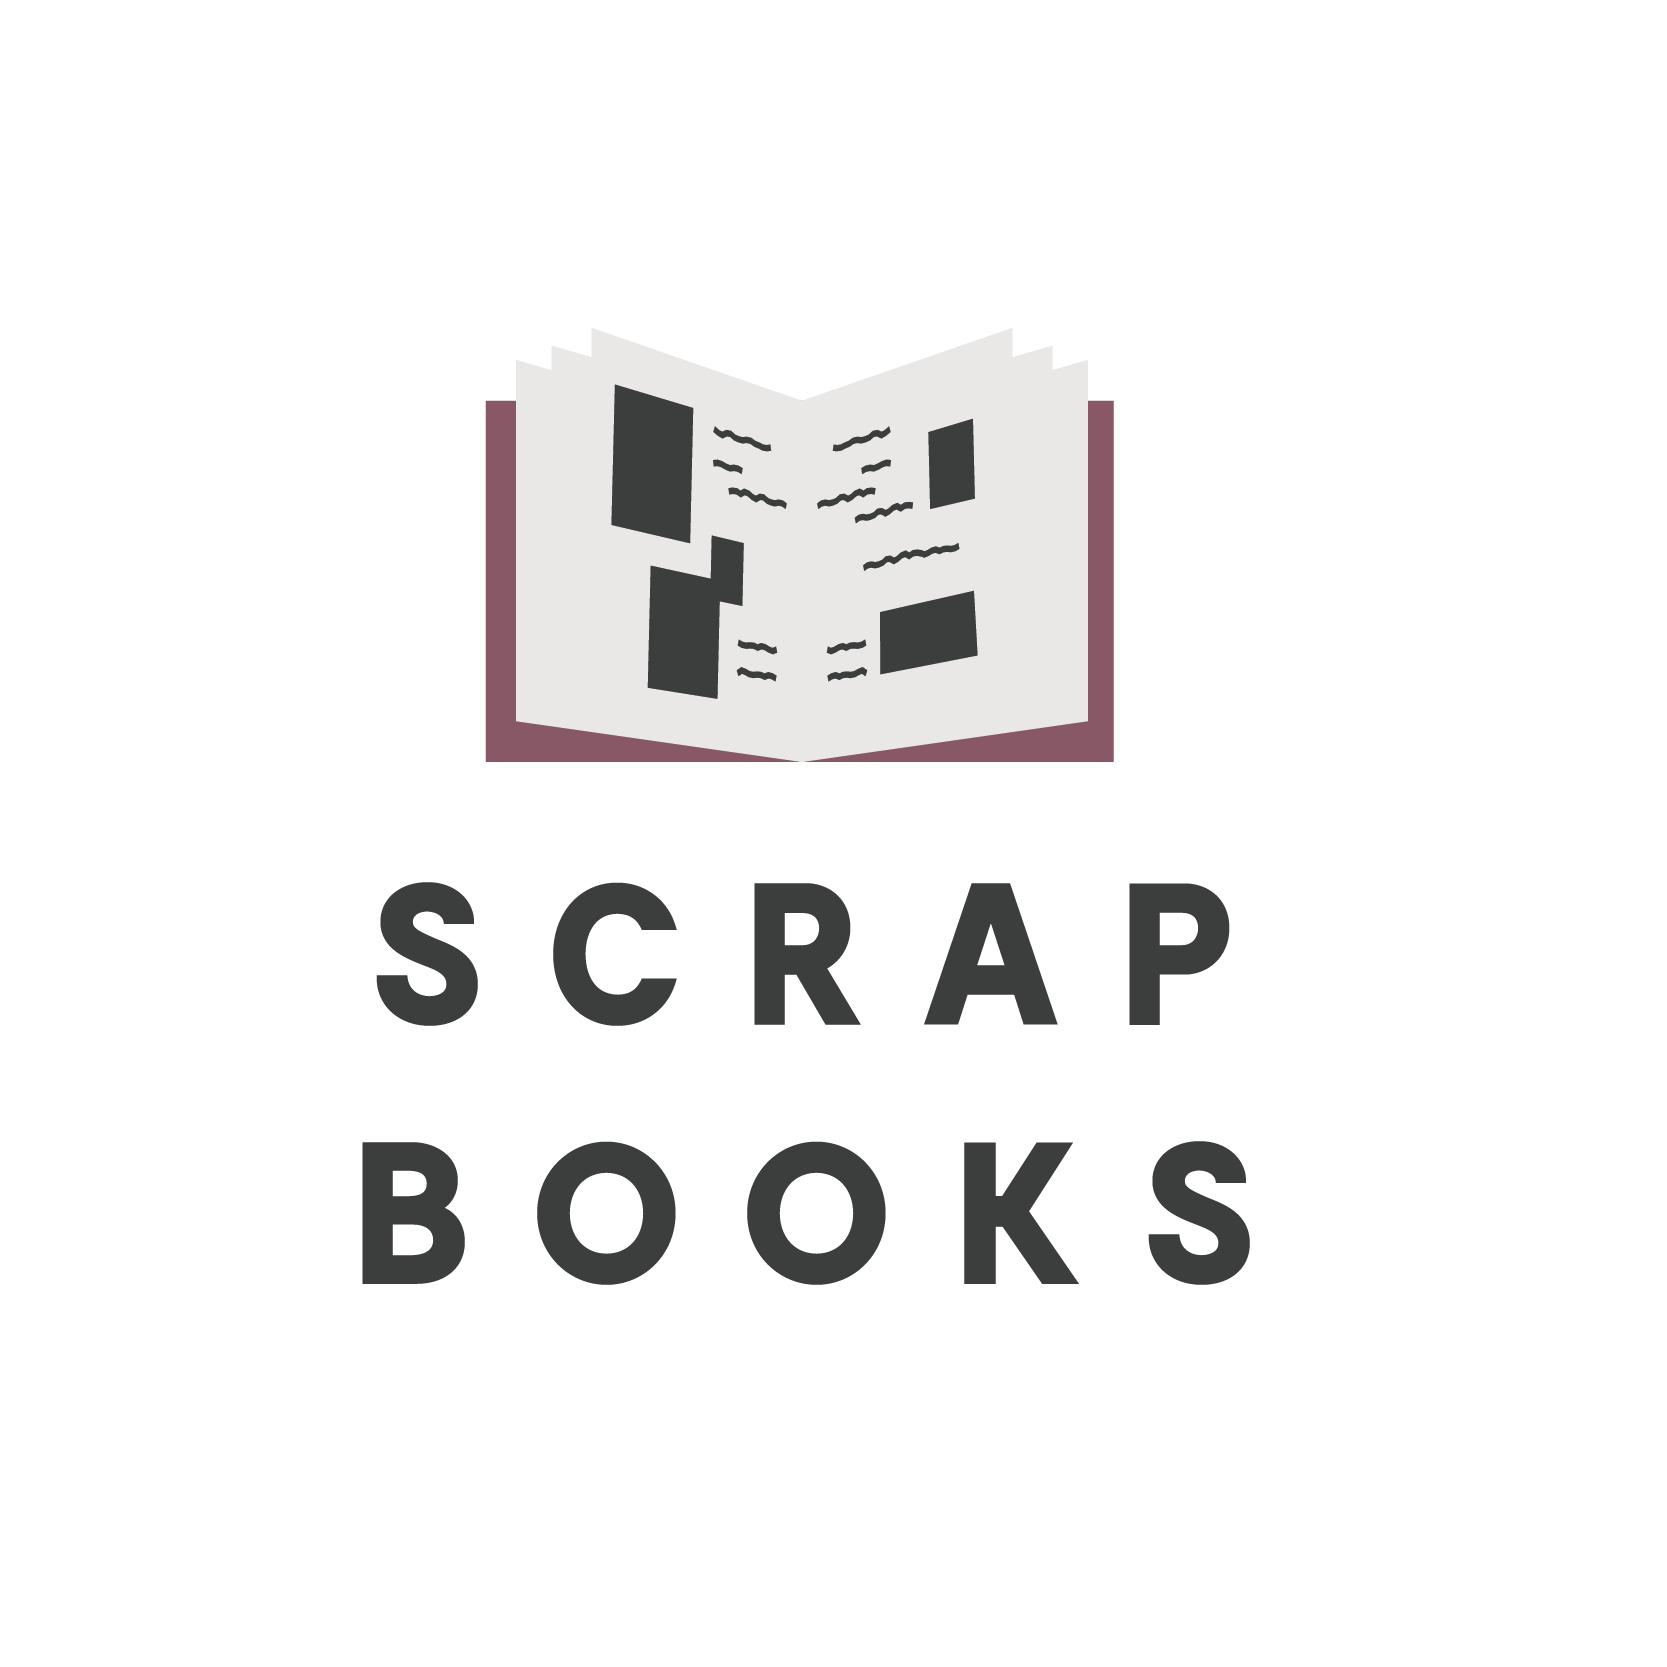 scrap books logo